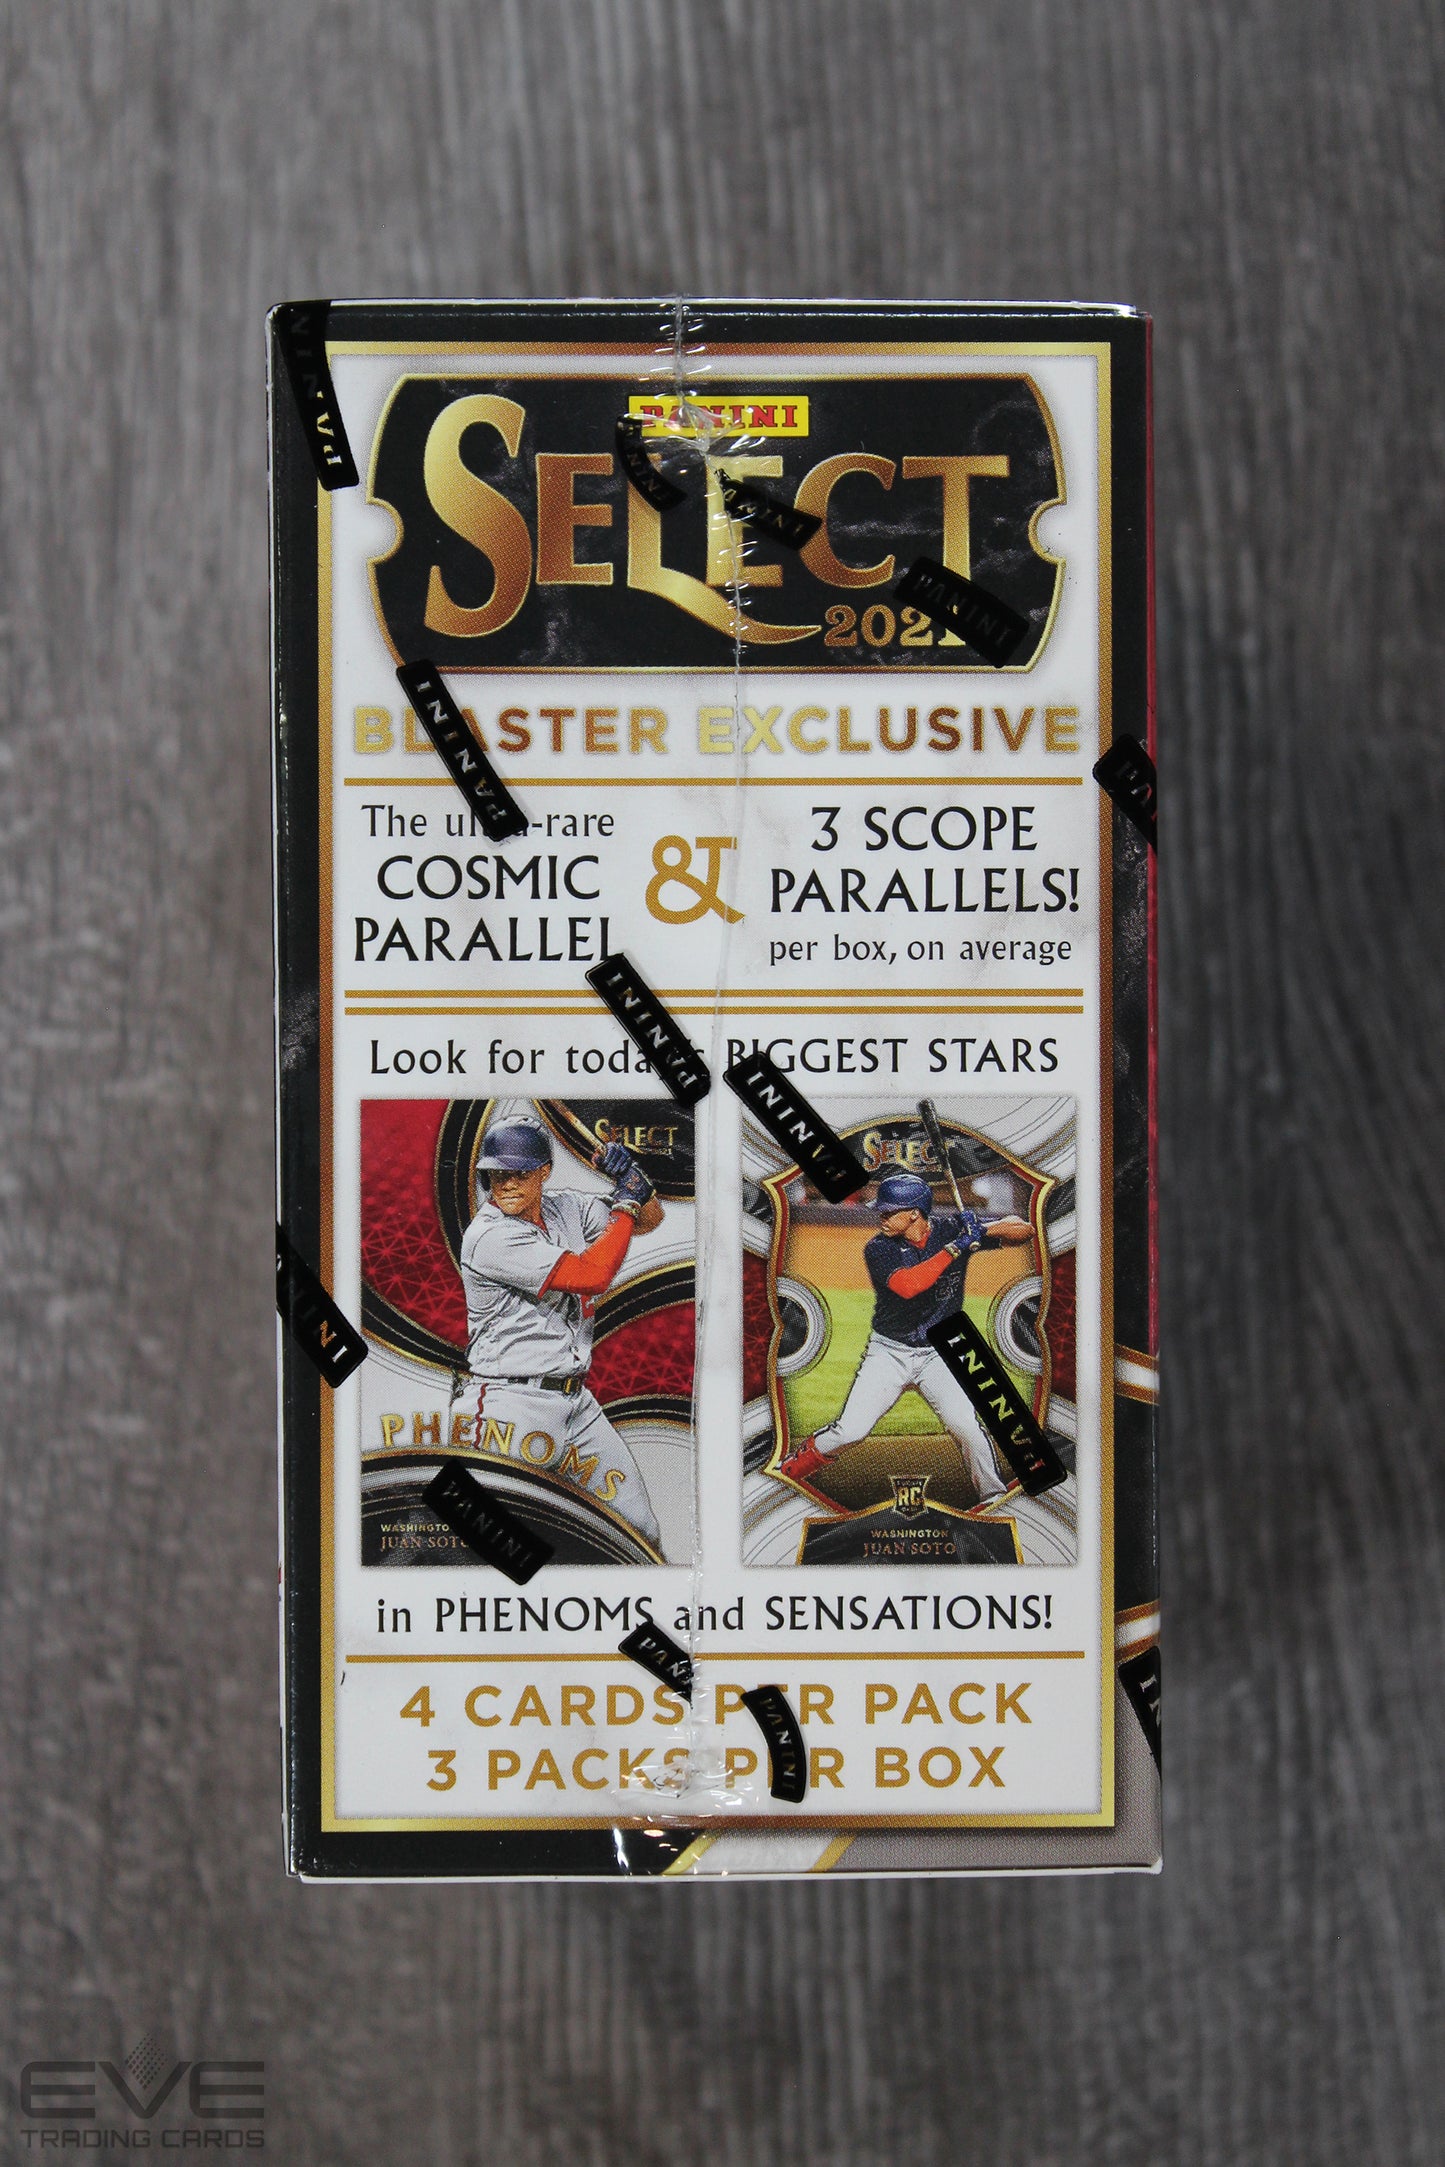 2021 Panini Select Baseball Trading Cards Blaster Box